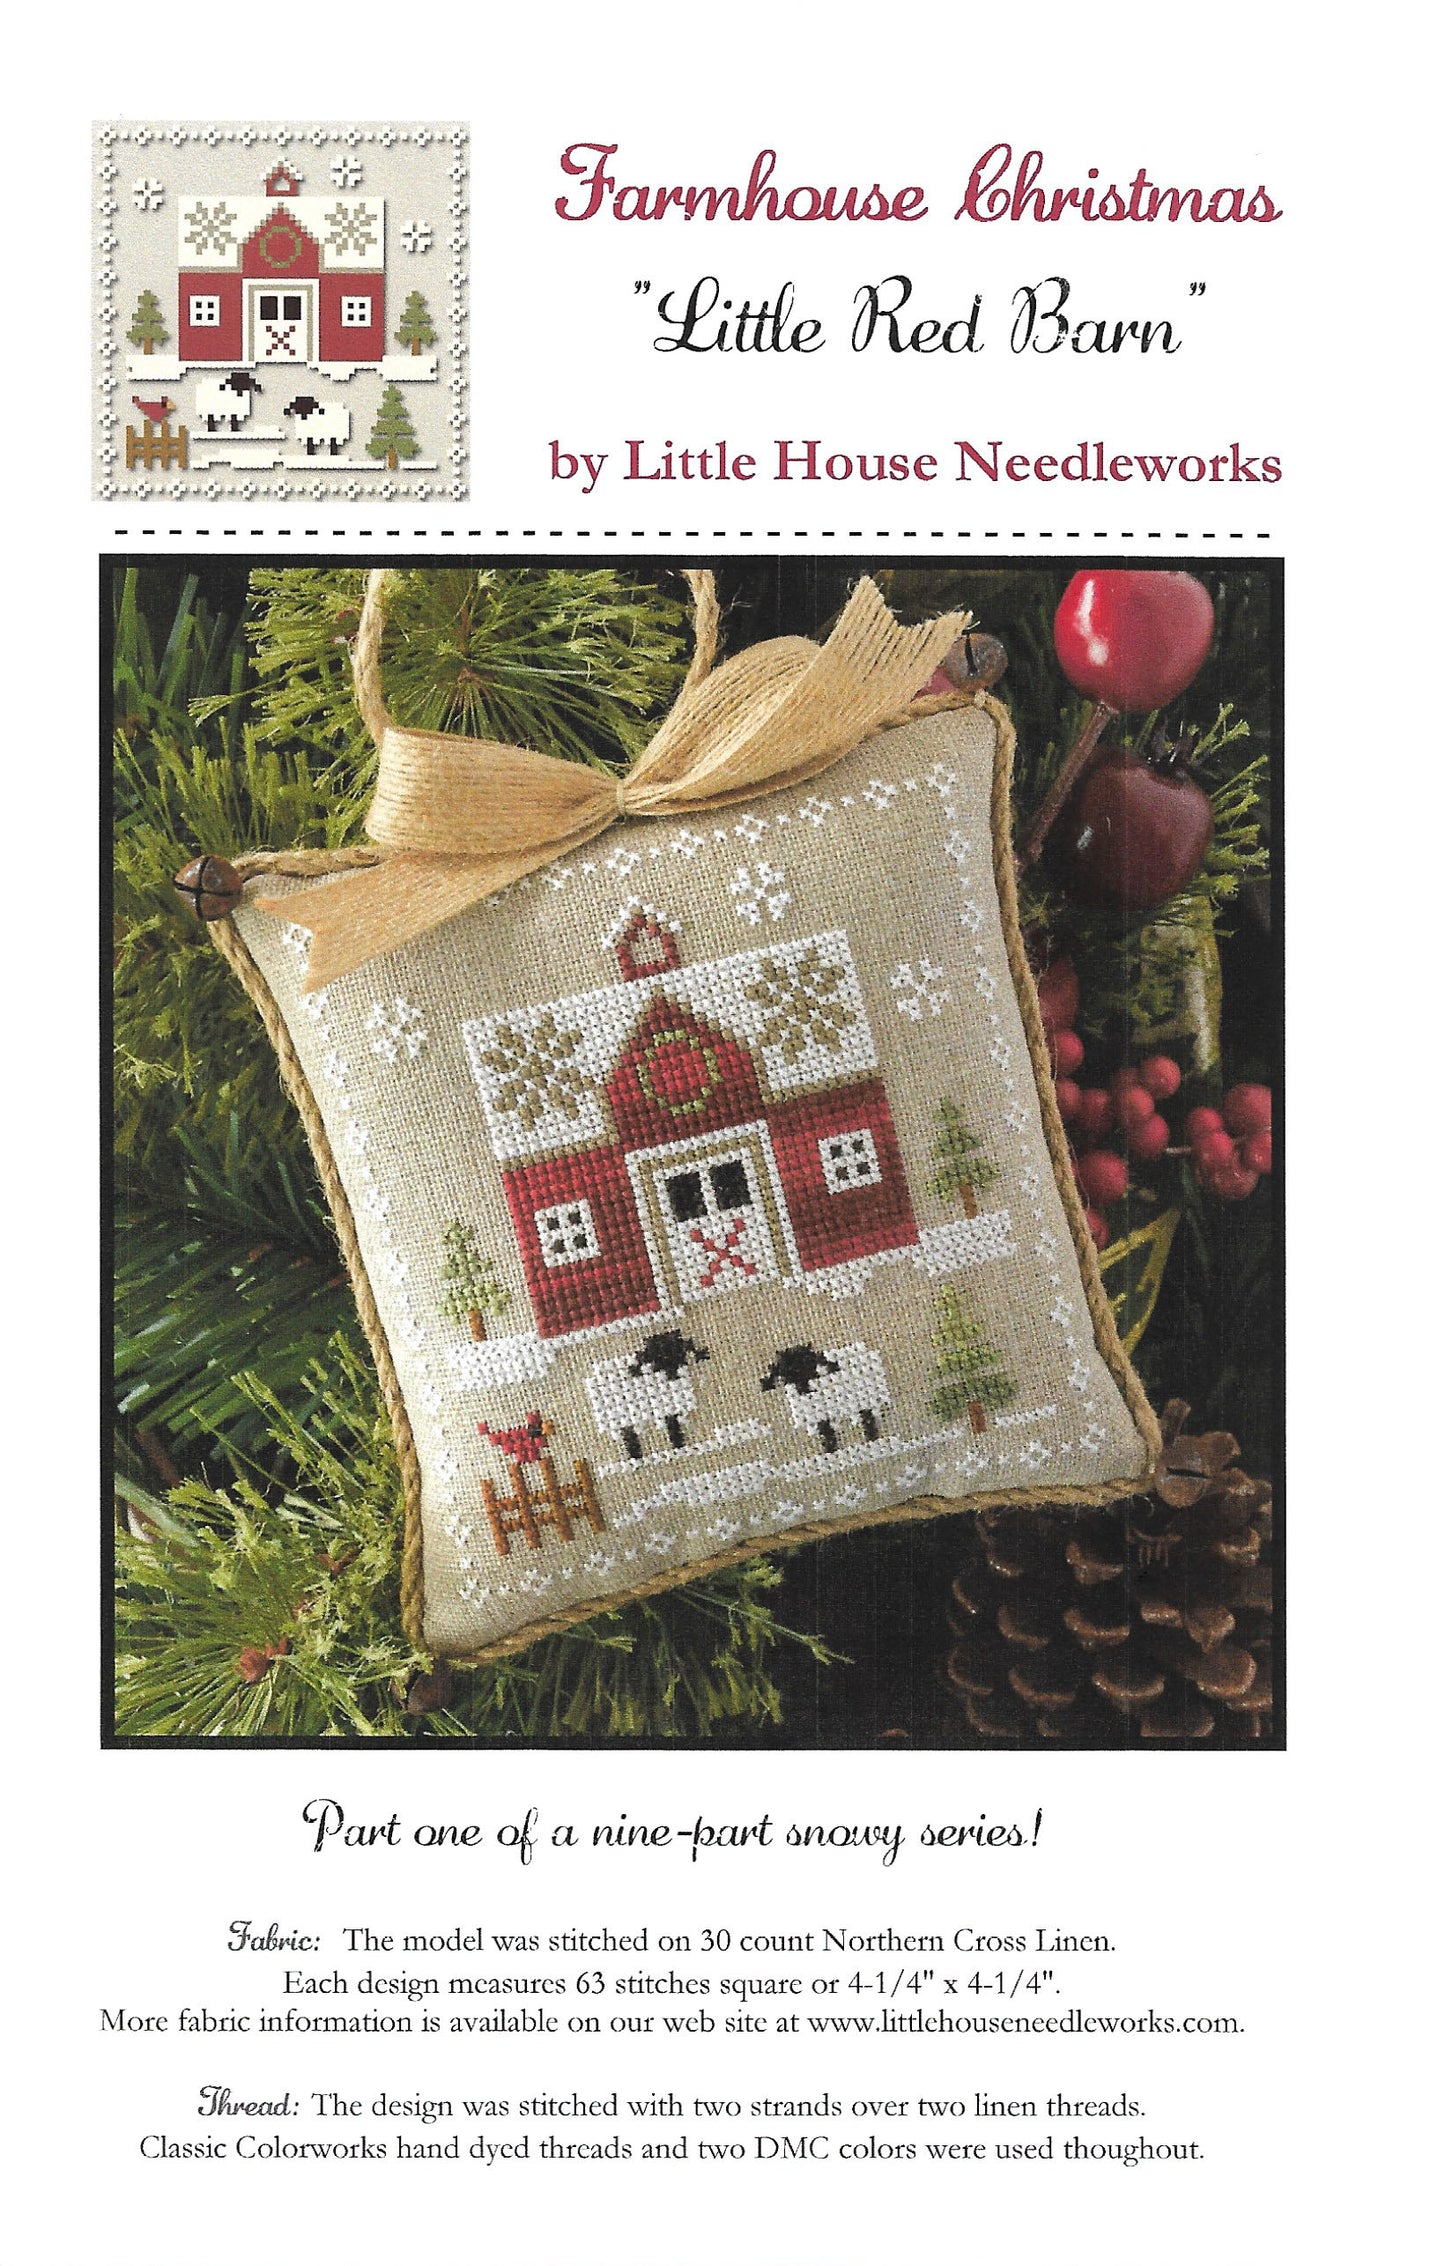 Little House Needleworks - Farmhouse Christmas Part 1 - Little Red Barn